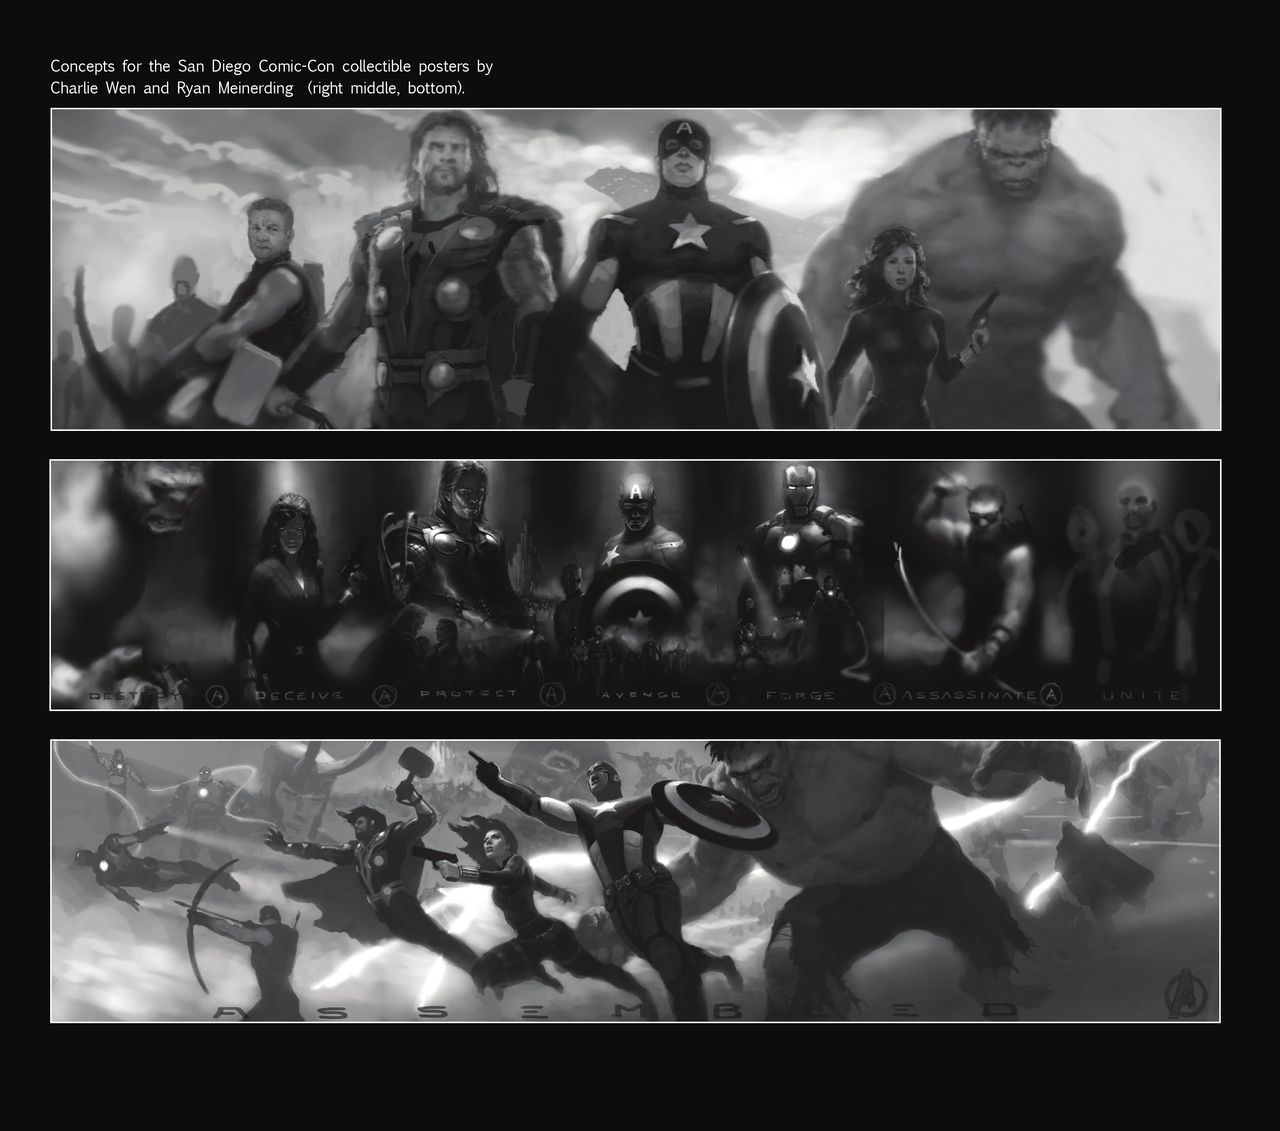 The Art of Marvel's The Avengers 202